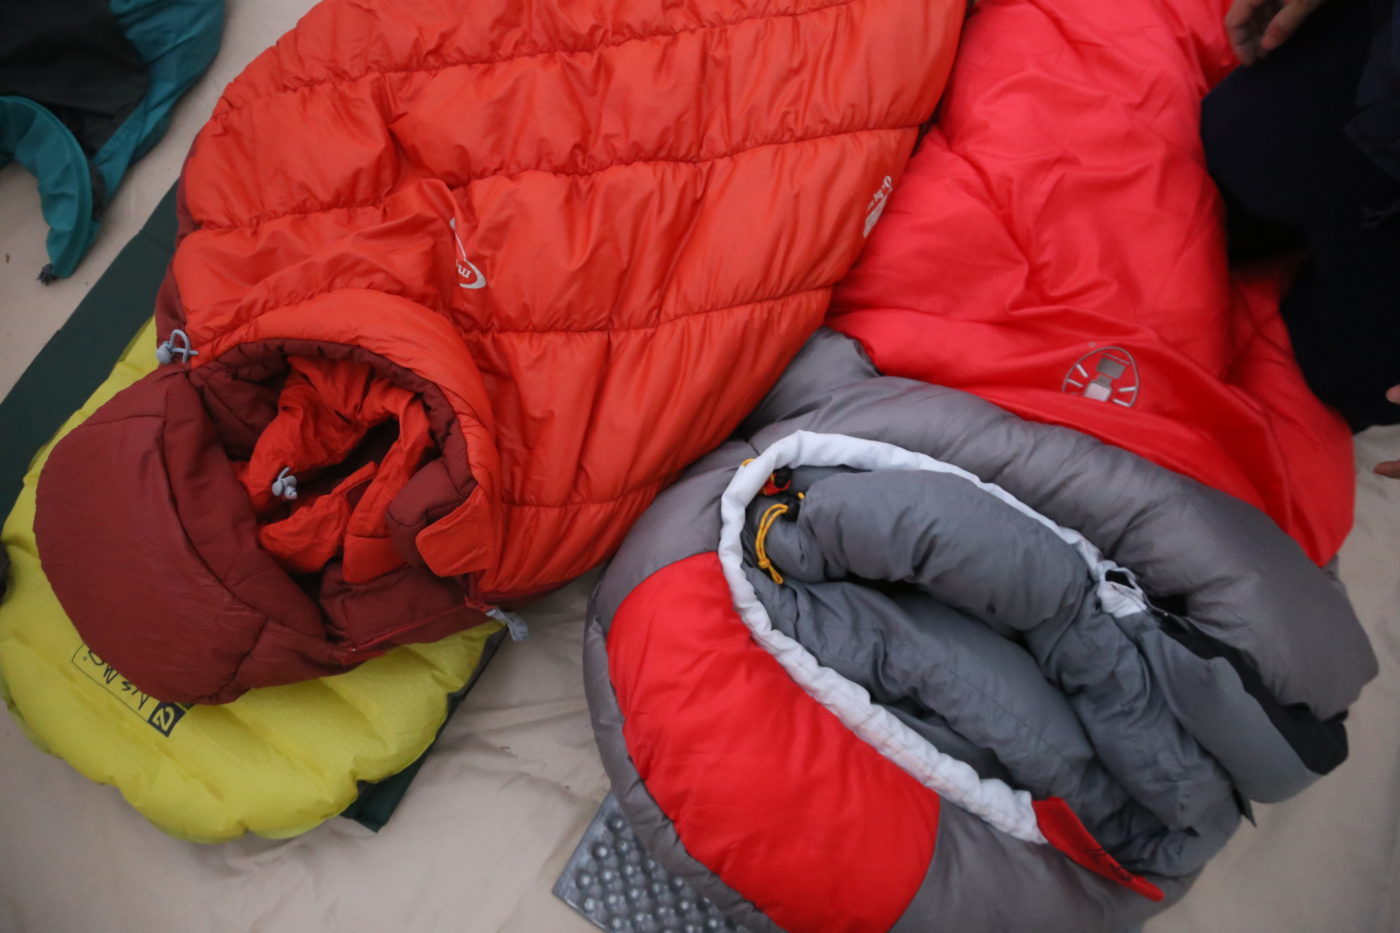 2020年最新版寝袋(シュラフ)の選び方と種類、オススメの寝袋にお手入れ含めて全部まとめ  キャンプ初心者向け総合情報ブログ Hyper Camp  Creators